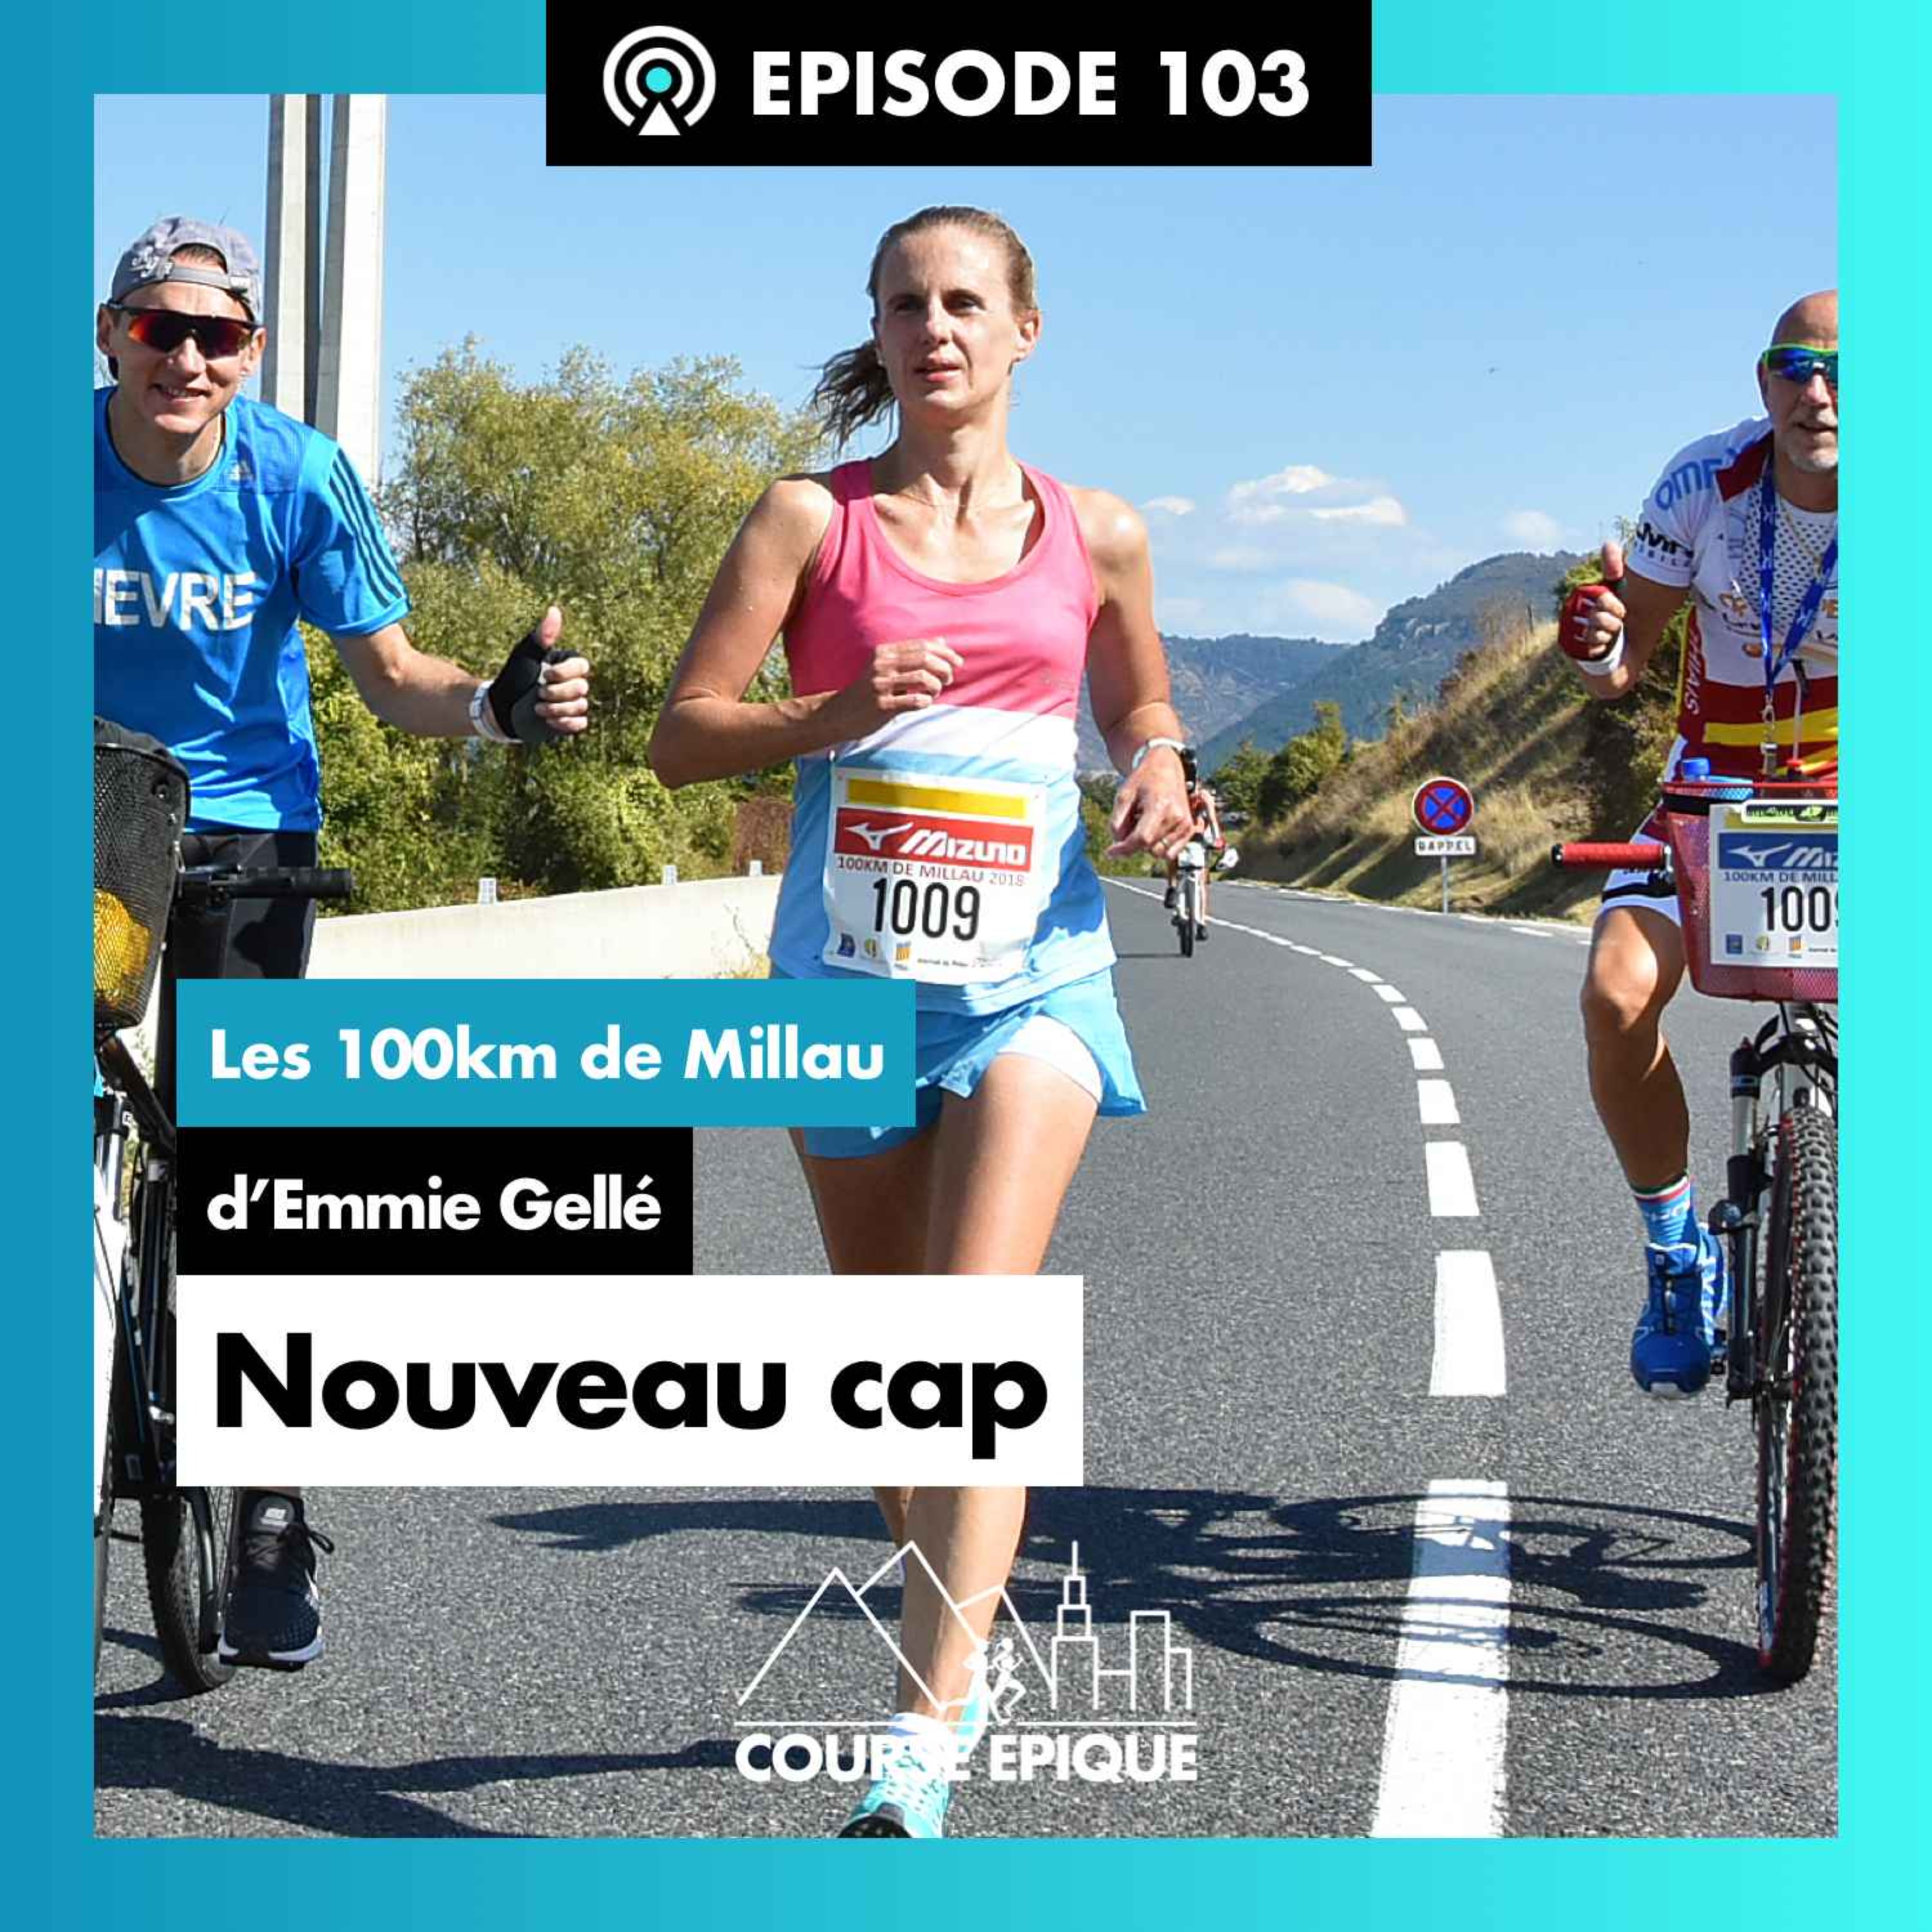 #103 "Nouveau cap", les 100km de Millau d'Emmie Gellé